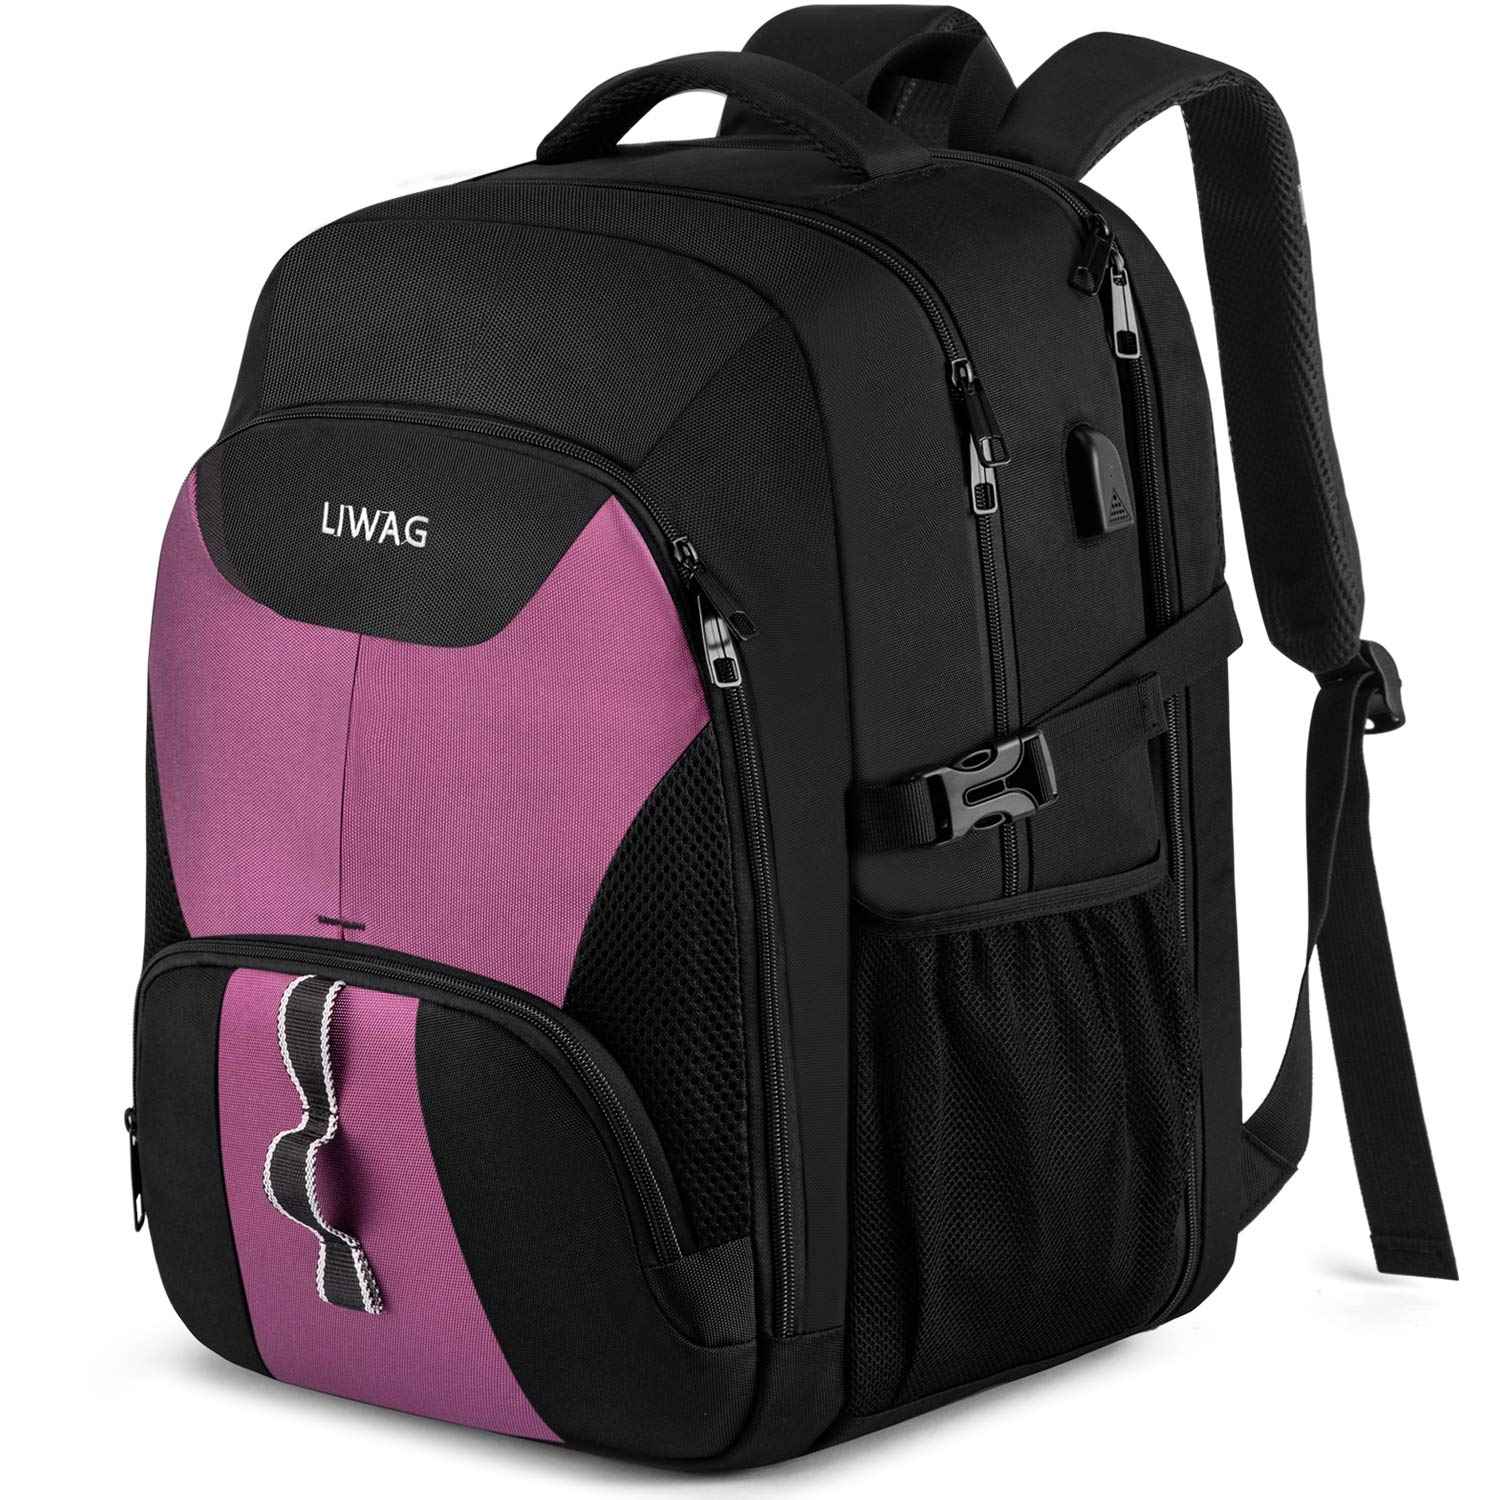 กระเป๋าเป้ใส่แล็ปท็อปสำหรับเดินทางขนาด 17 นิ้วแบบกันน้ำพร้อมพอร์ตชาร์จ USB